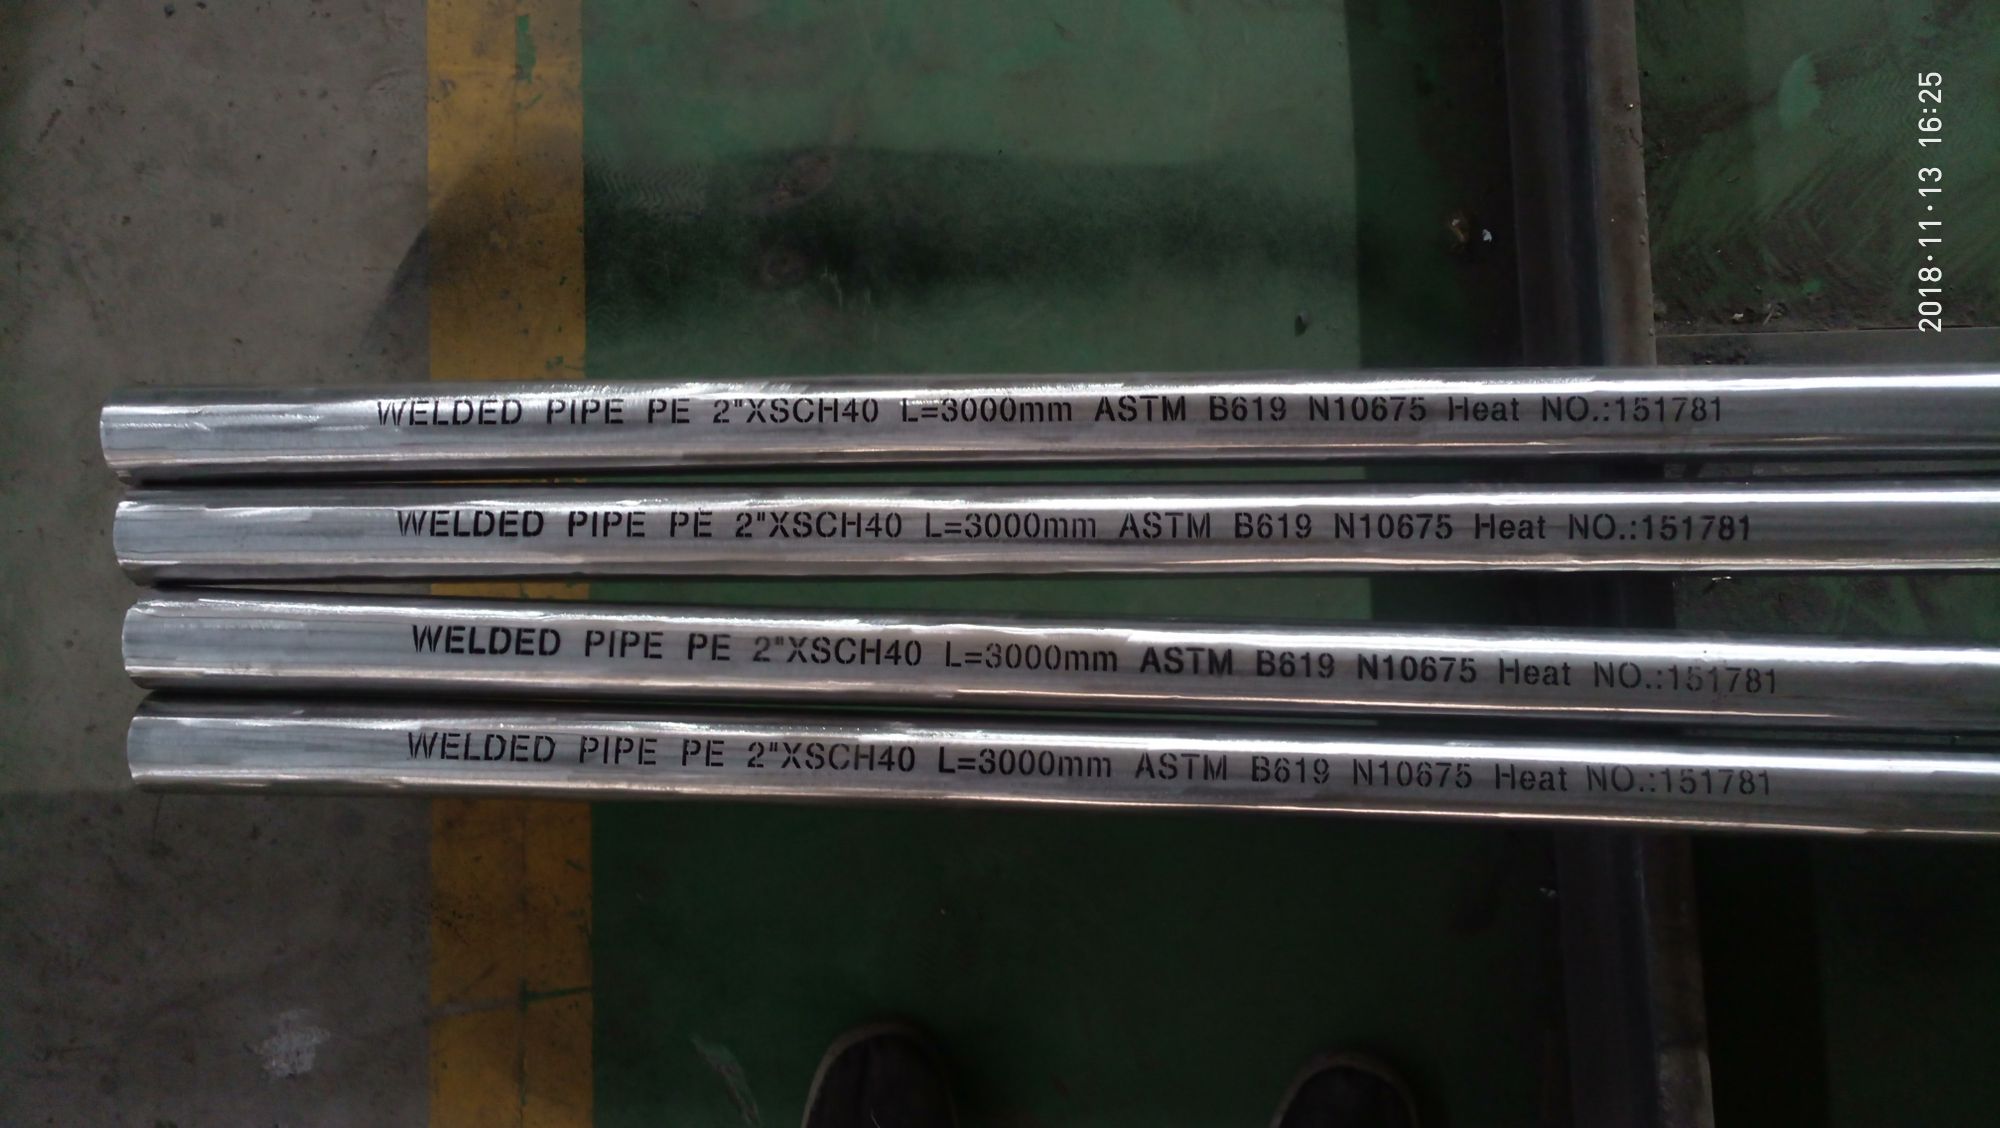 ASTM B619 N10675 welded pipes